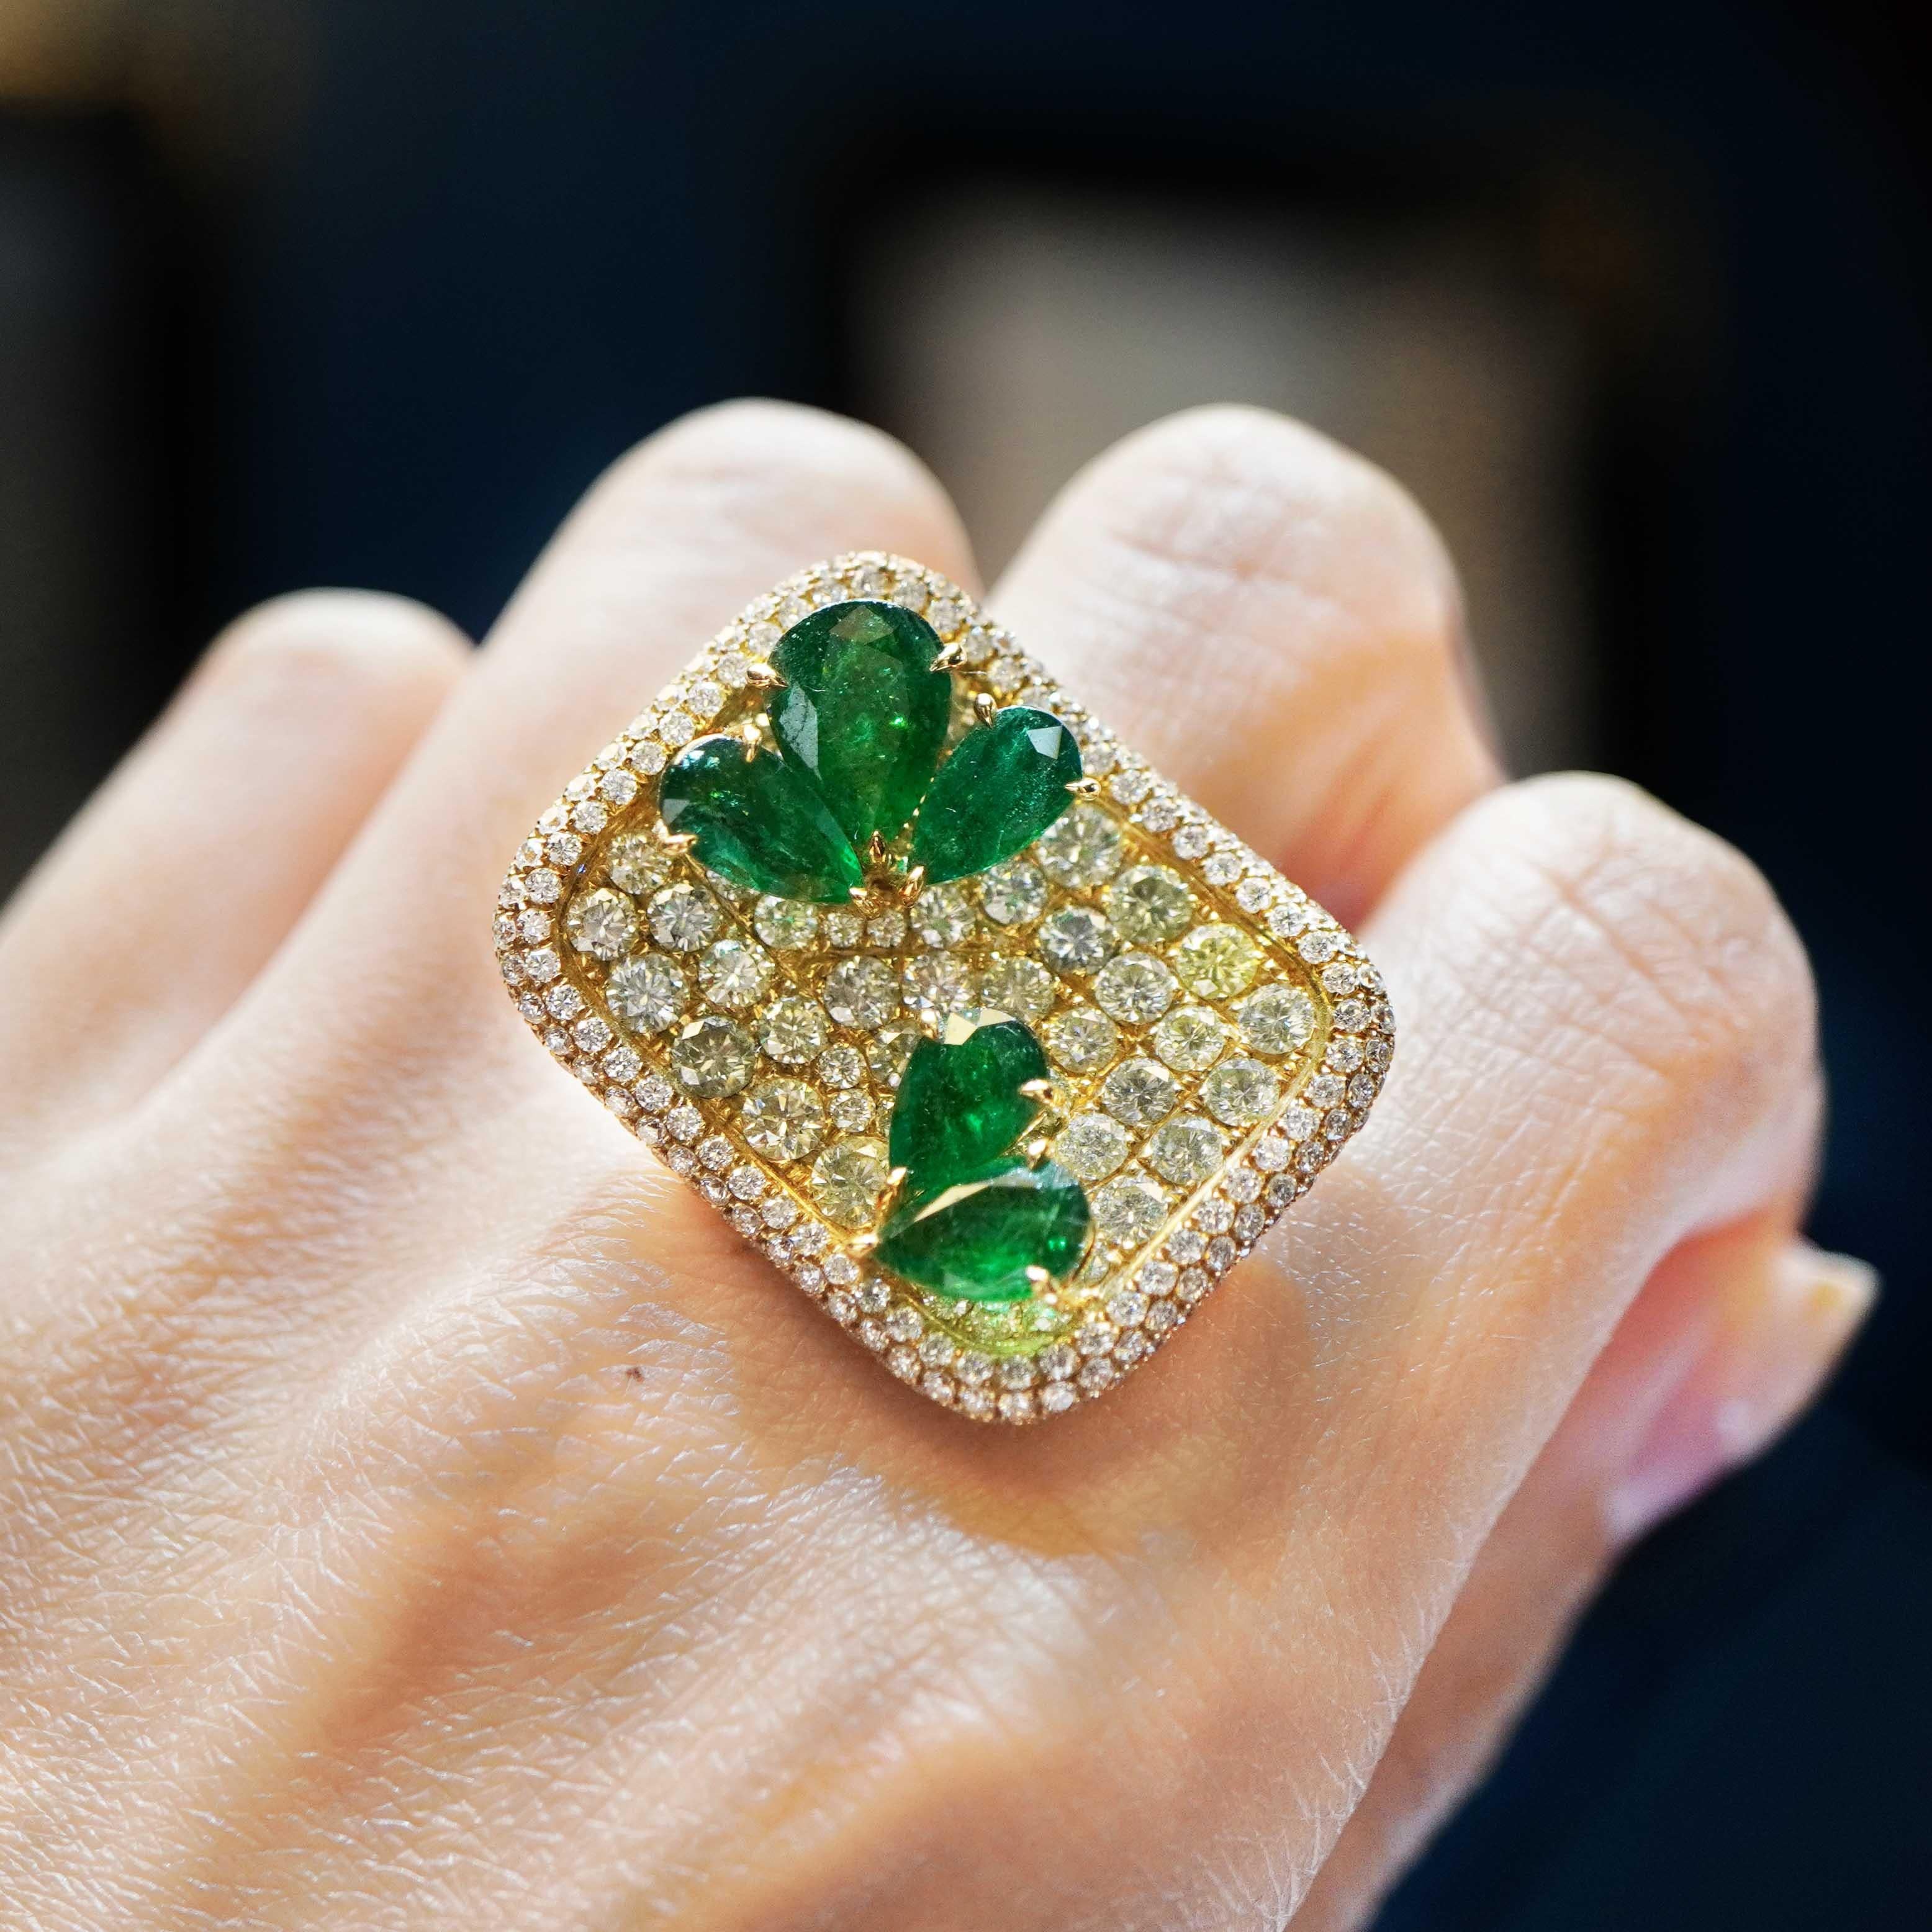 4.17 Karat lebhaft grüner kolumbianischer Smaragd sind zusammen mit 4,33 Karat natürlichem Fancy-Diamanten in diesem Garden Inspired Ring gefasst. Der Ring ist eine spektakuläre Kombination aus leuchtend grünem Smaragd und natürlichem